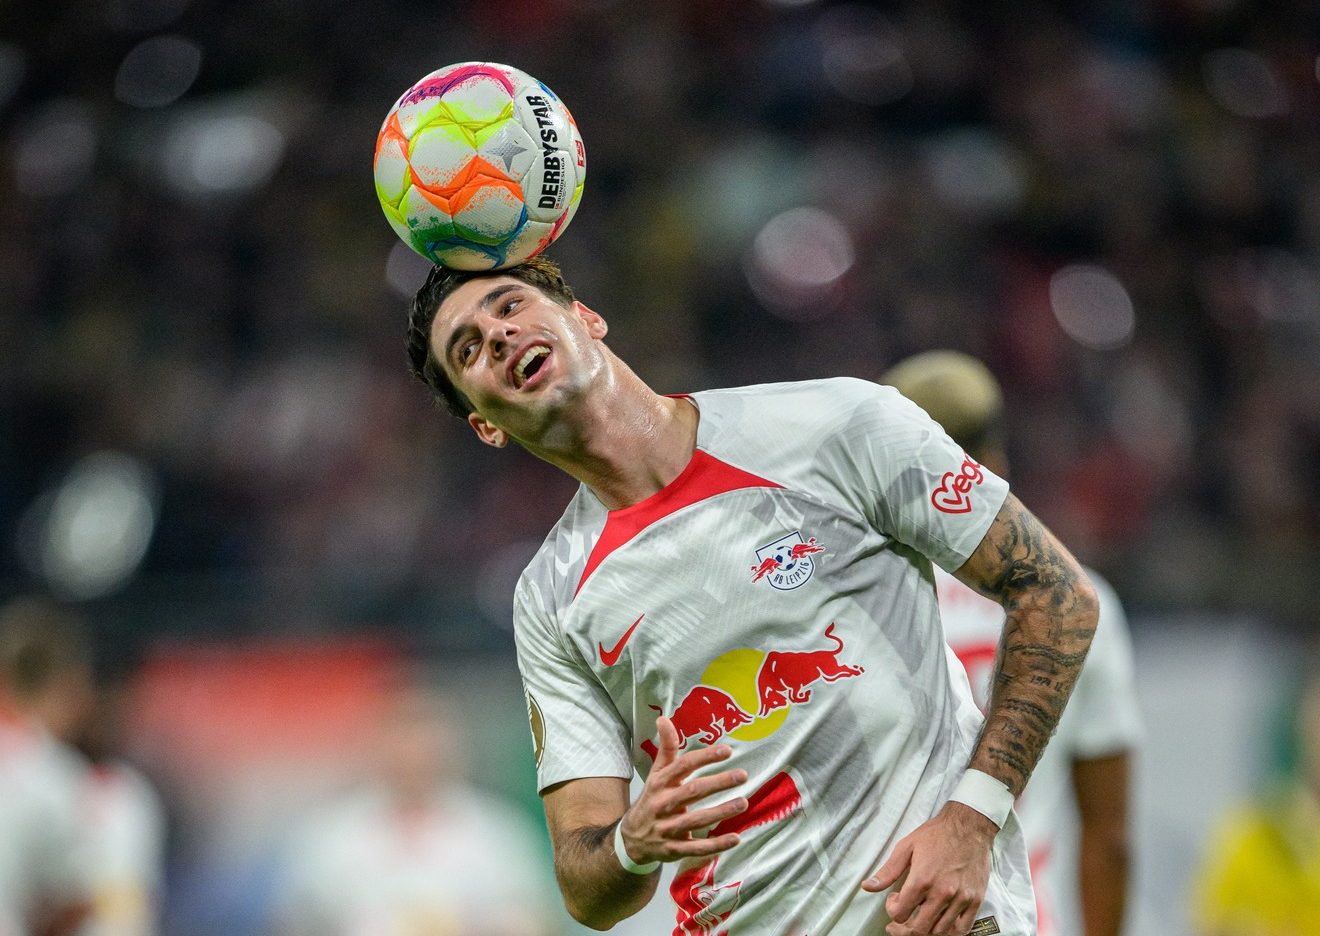 Ungarischer Spieler von zwei Fachportalen in das Bundesliga-Traumteam der Saison gewählt